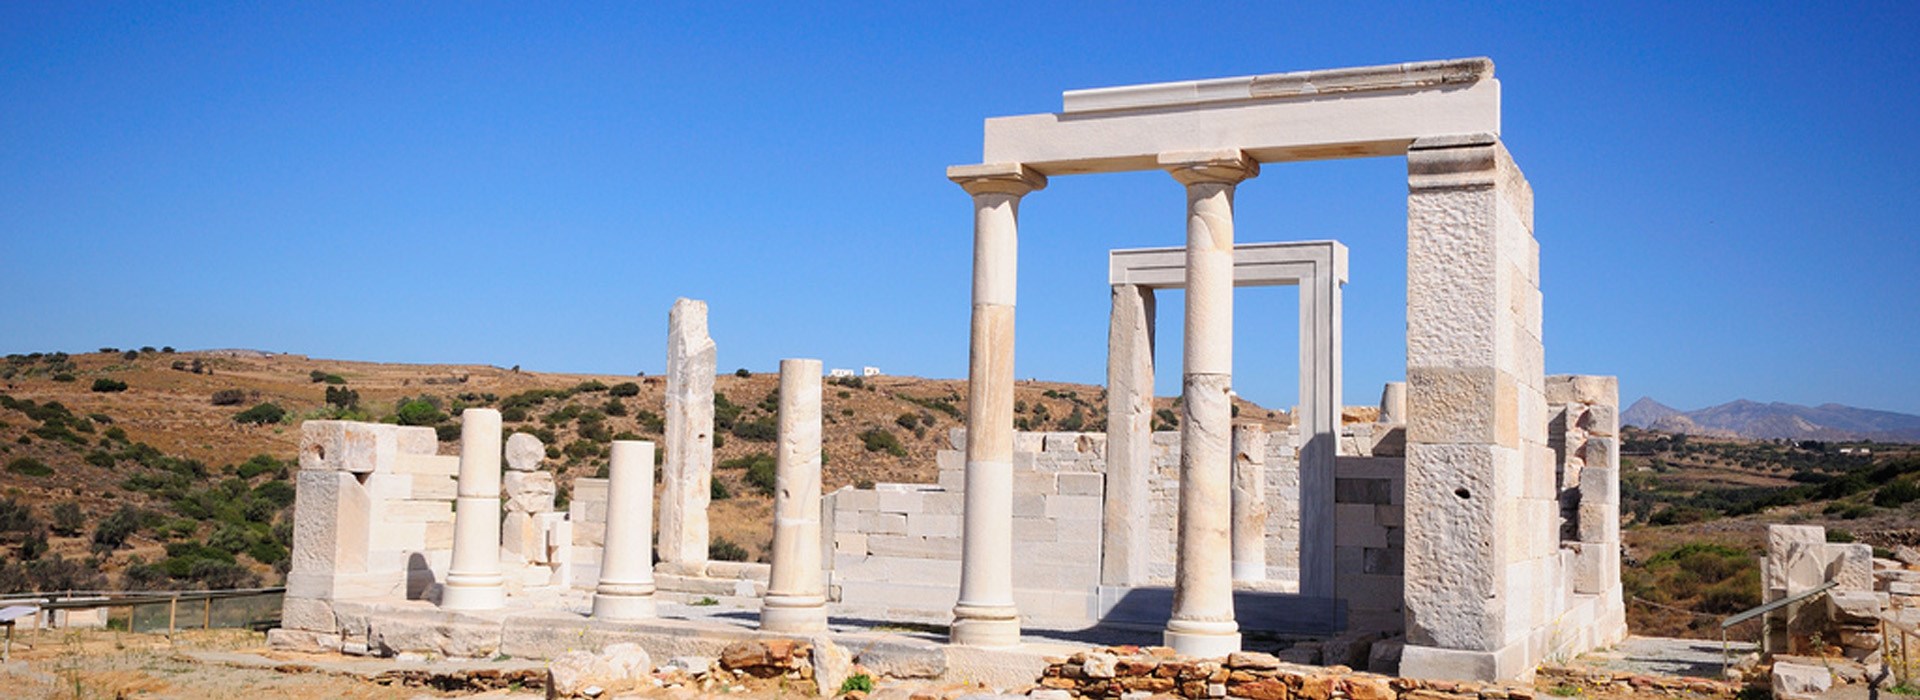 Visiter Le temple de Demeter - Grèce